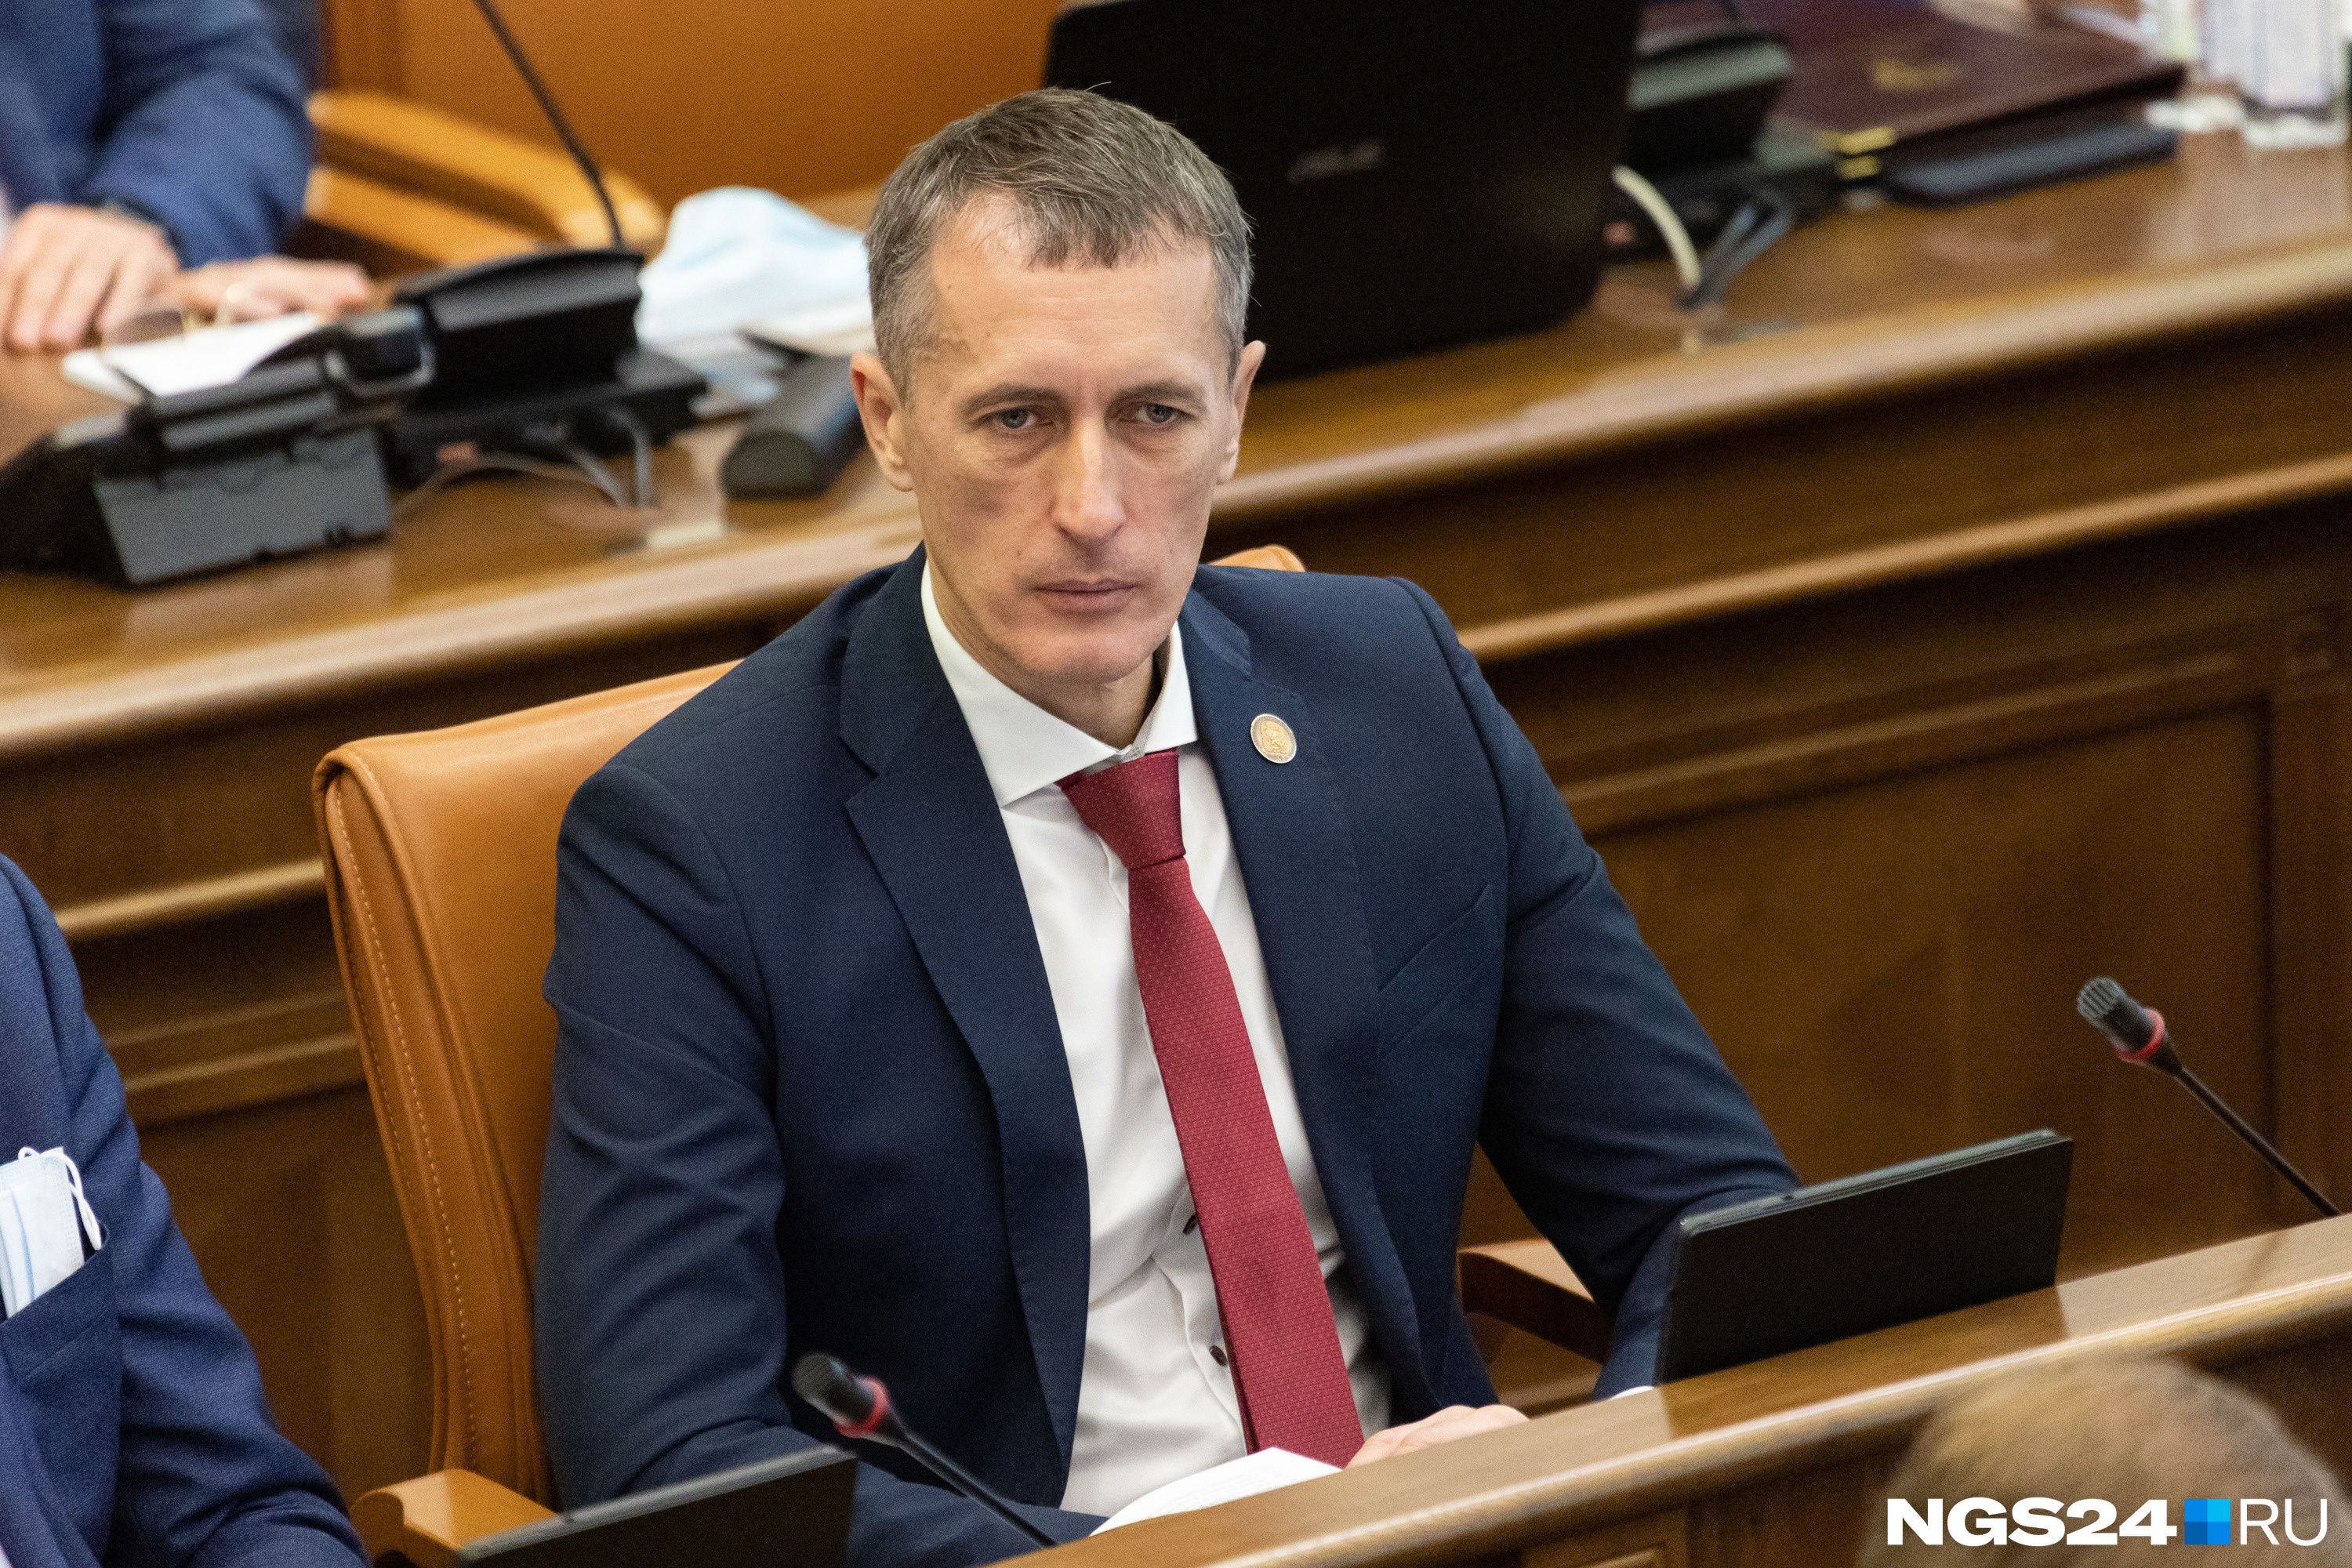 Алексей Кулеш этим летом покинул партию ЛДПР. В новый созыв он баллотировался уже от ЕР